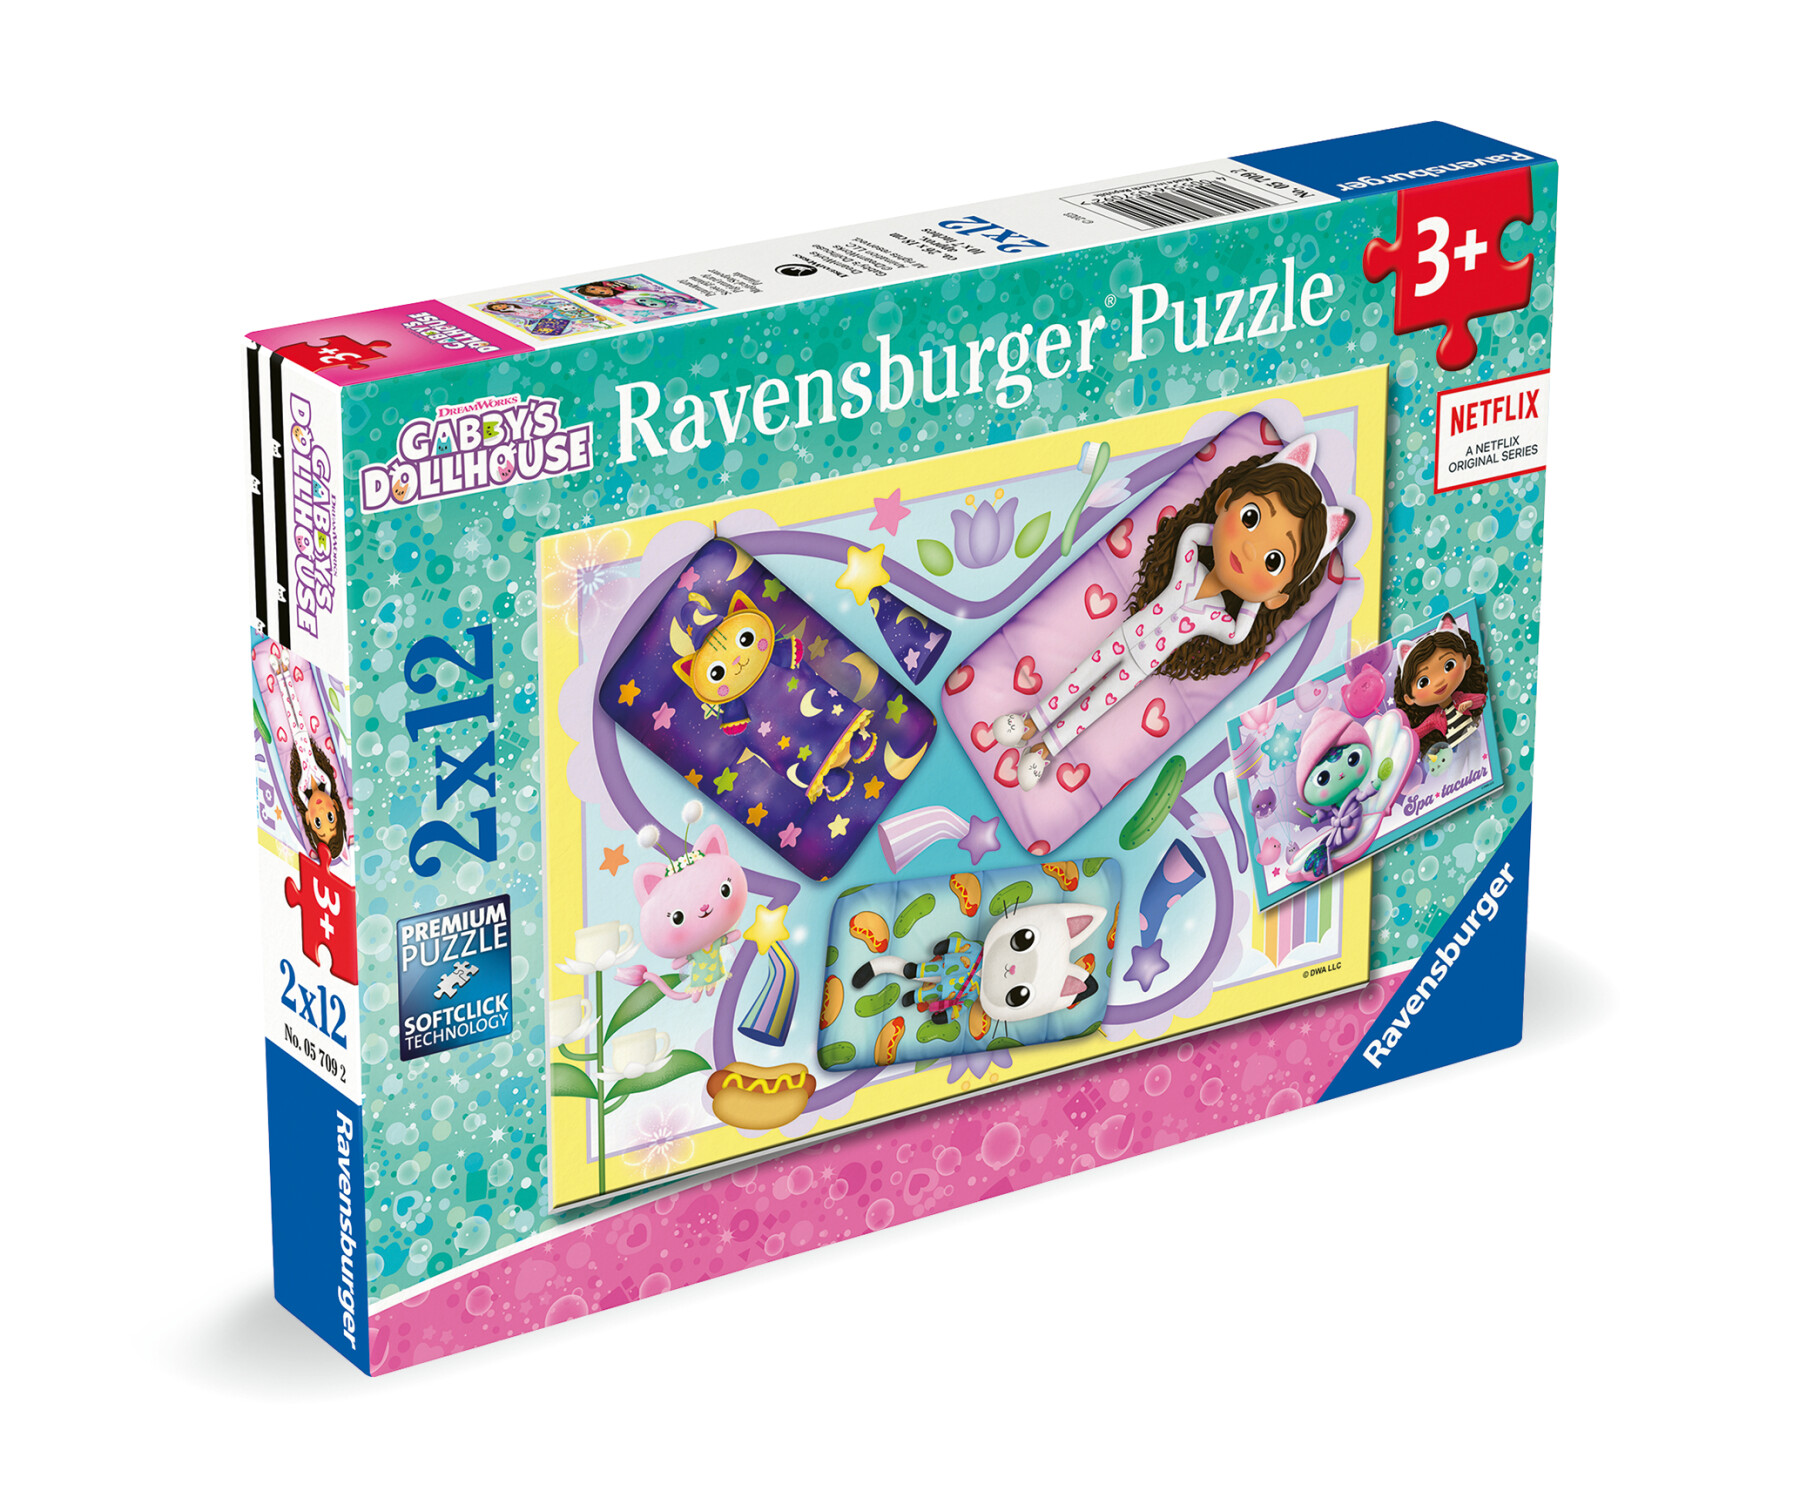 Ravensburger - puzzle gabby's dollhouse, collezione 2x12, 2 puzzle da 12 pezzi, età raccomandata 3+ anni - GABBY'S DOLLHOUSE, RAVENSBURGER